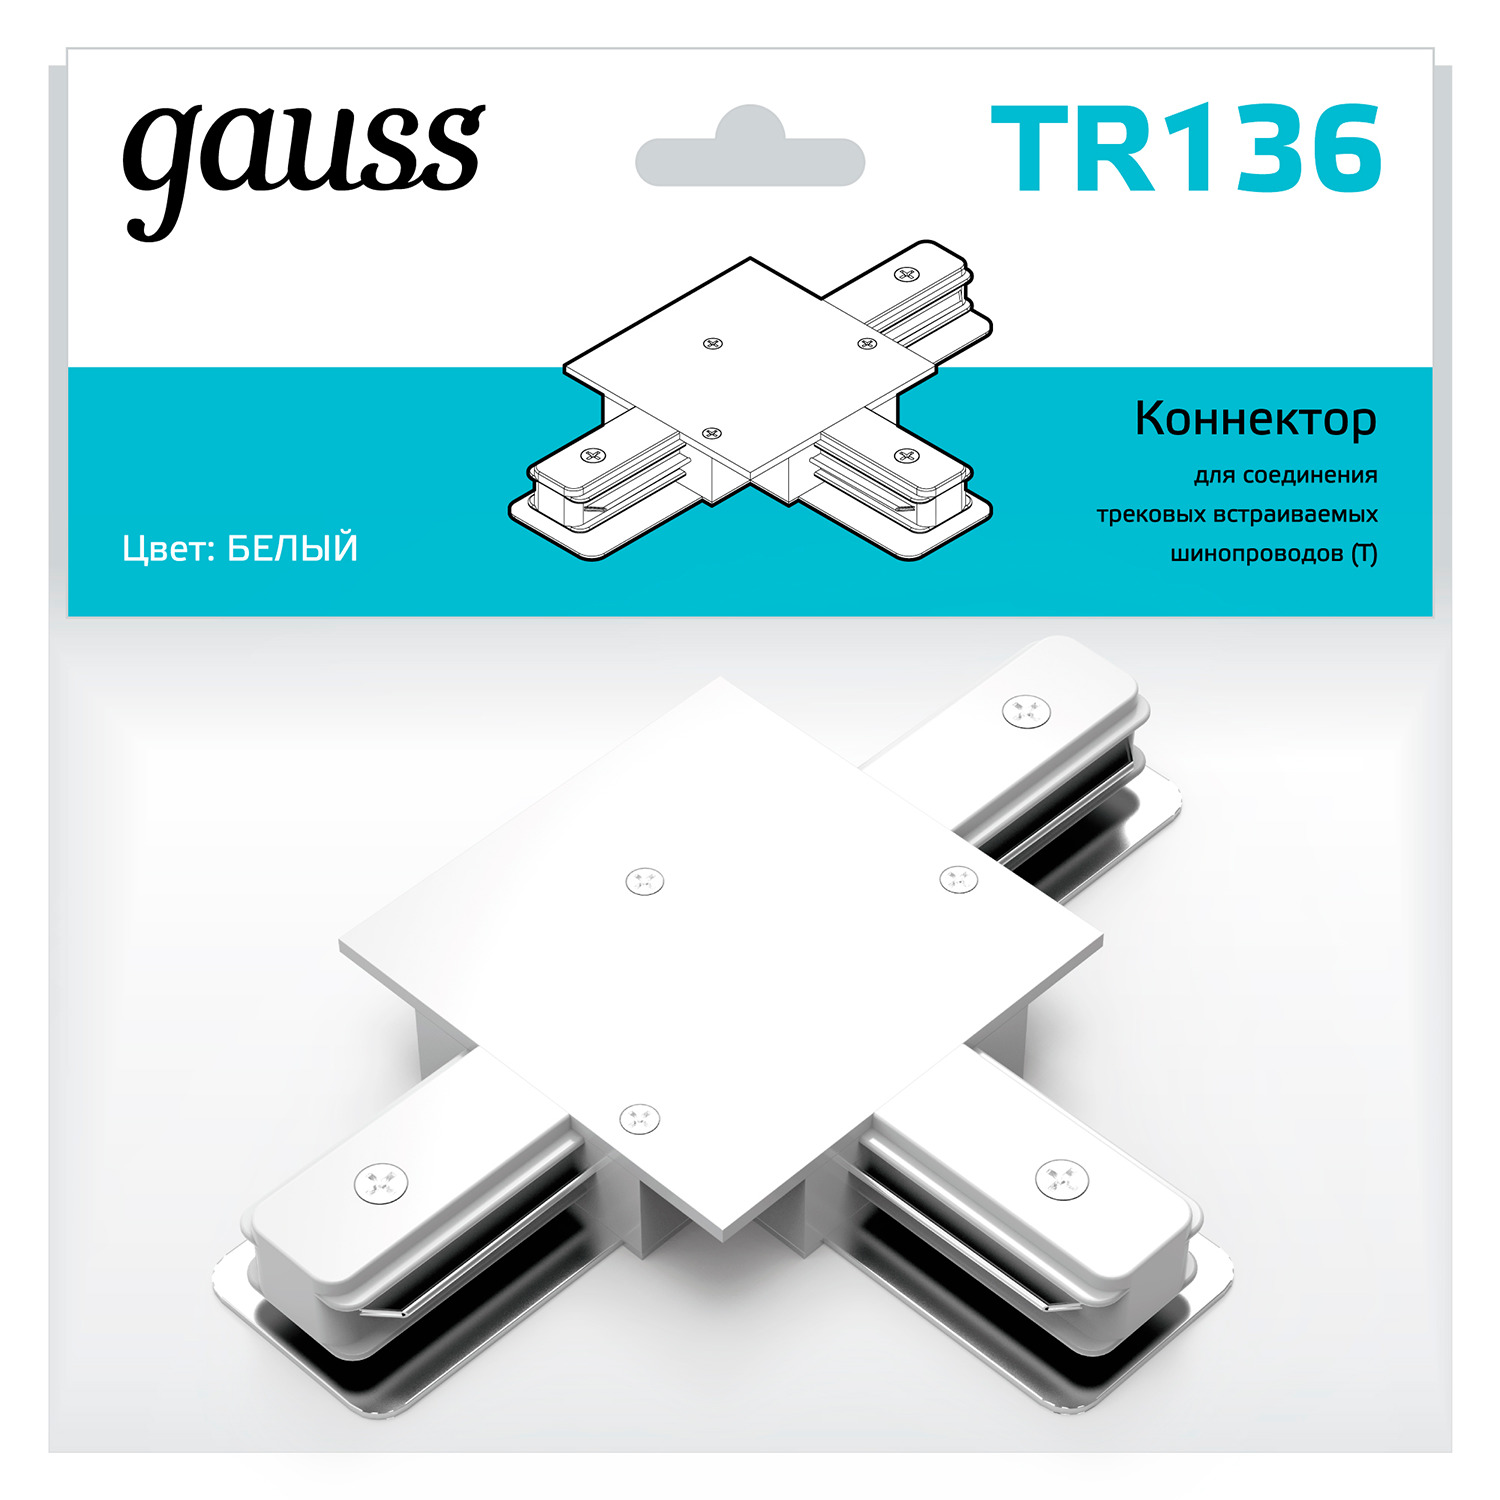 Коннектор Gauss для встраиваемых трековых шинопроводов (T) белый